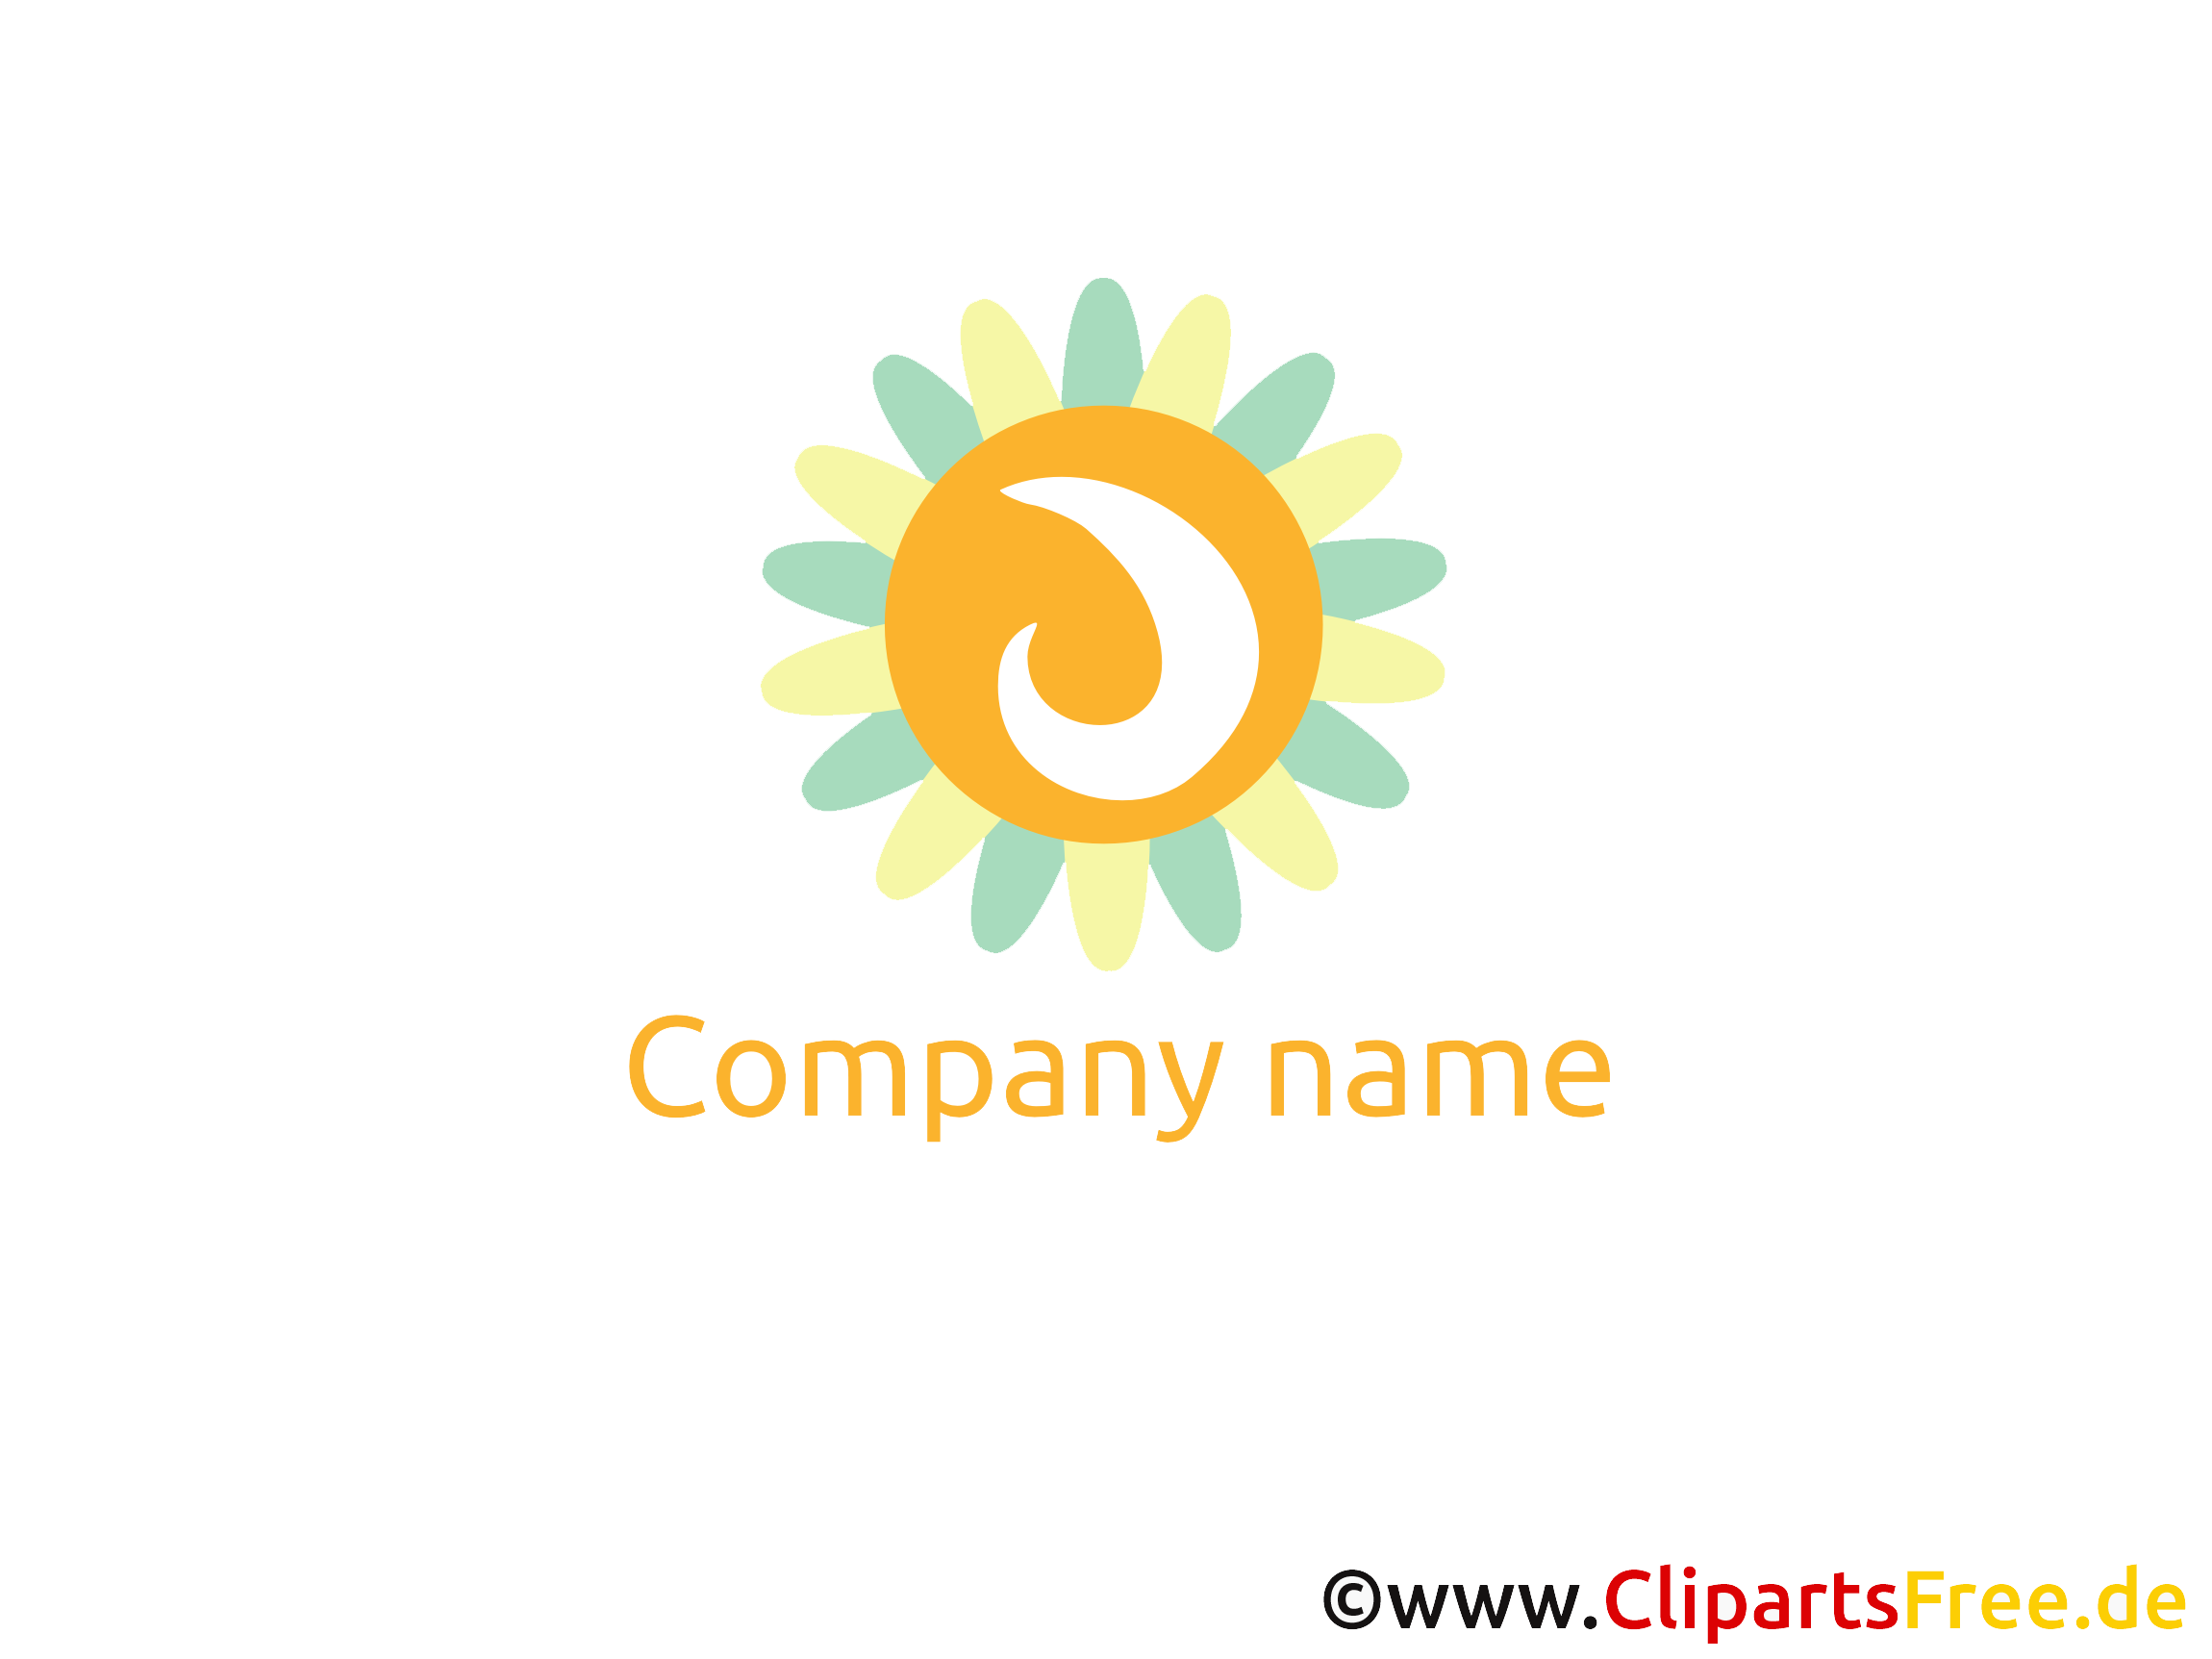 Soleil images gratuites – Logo clipart